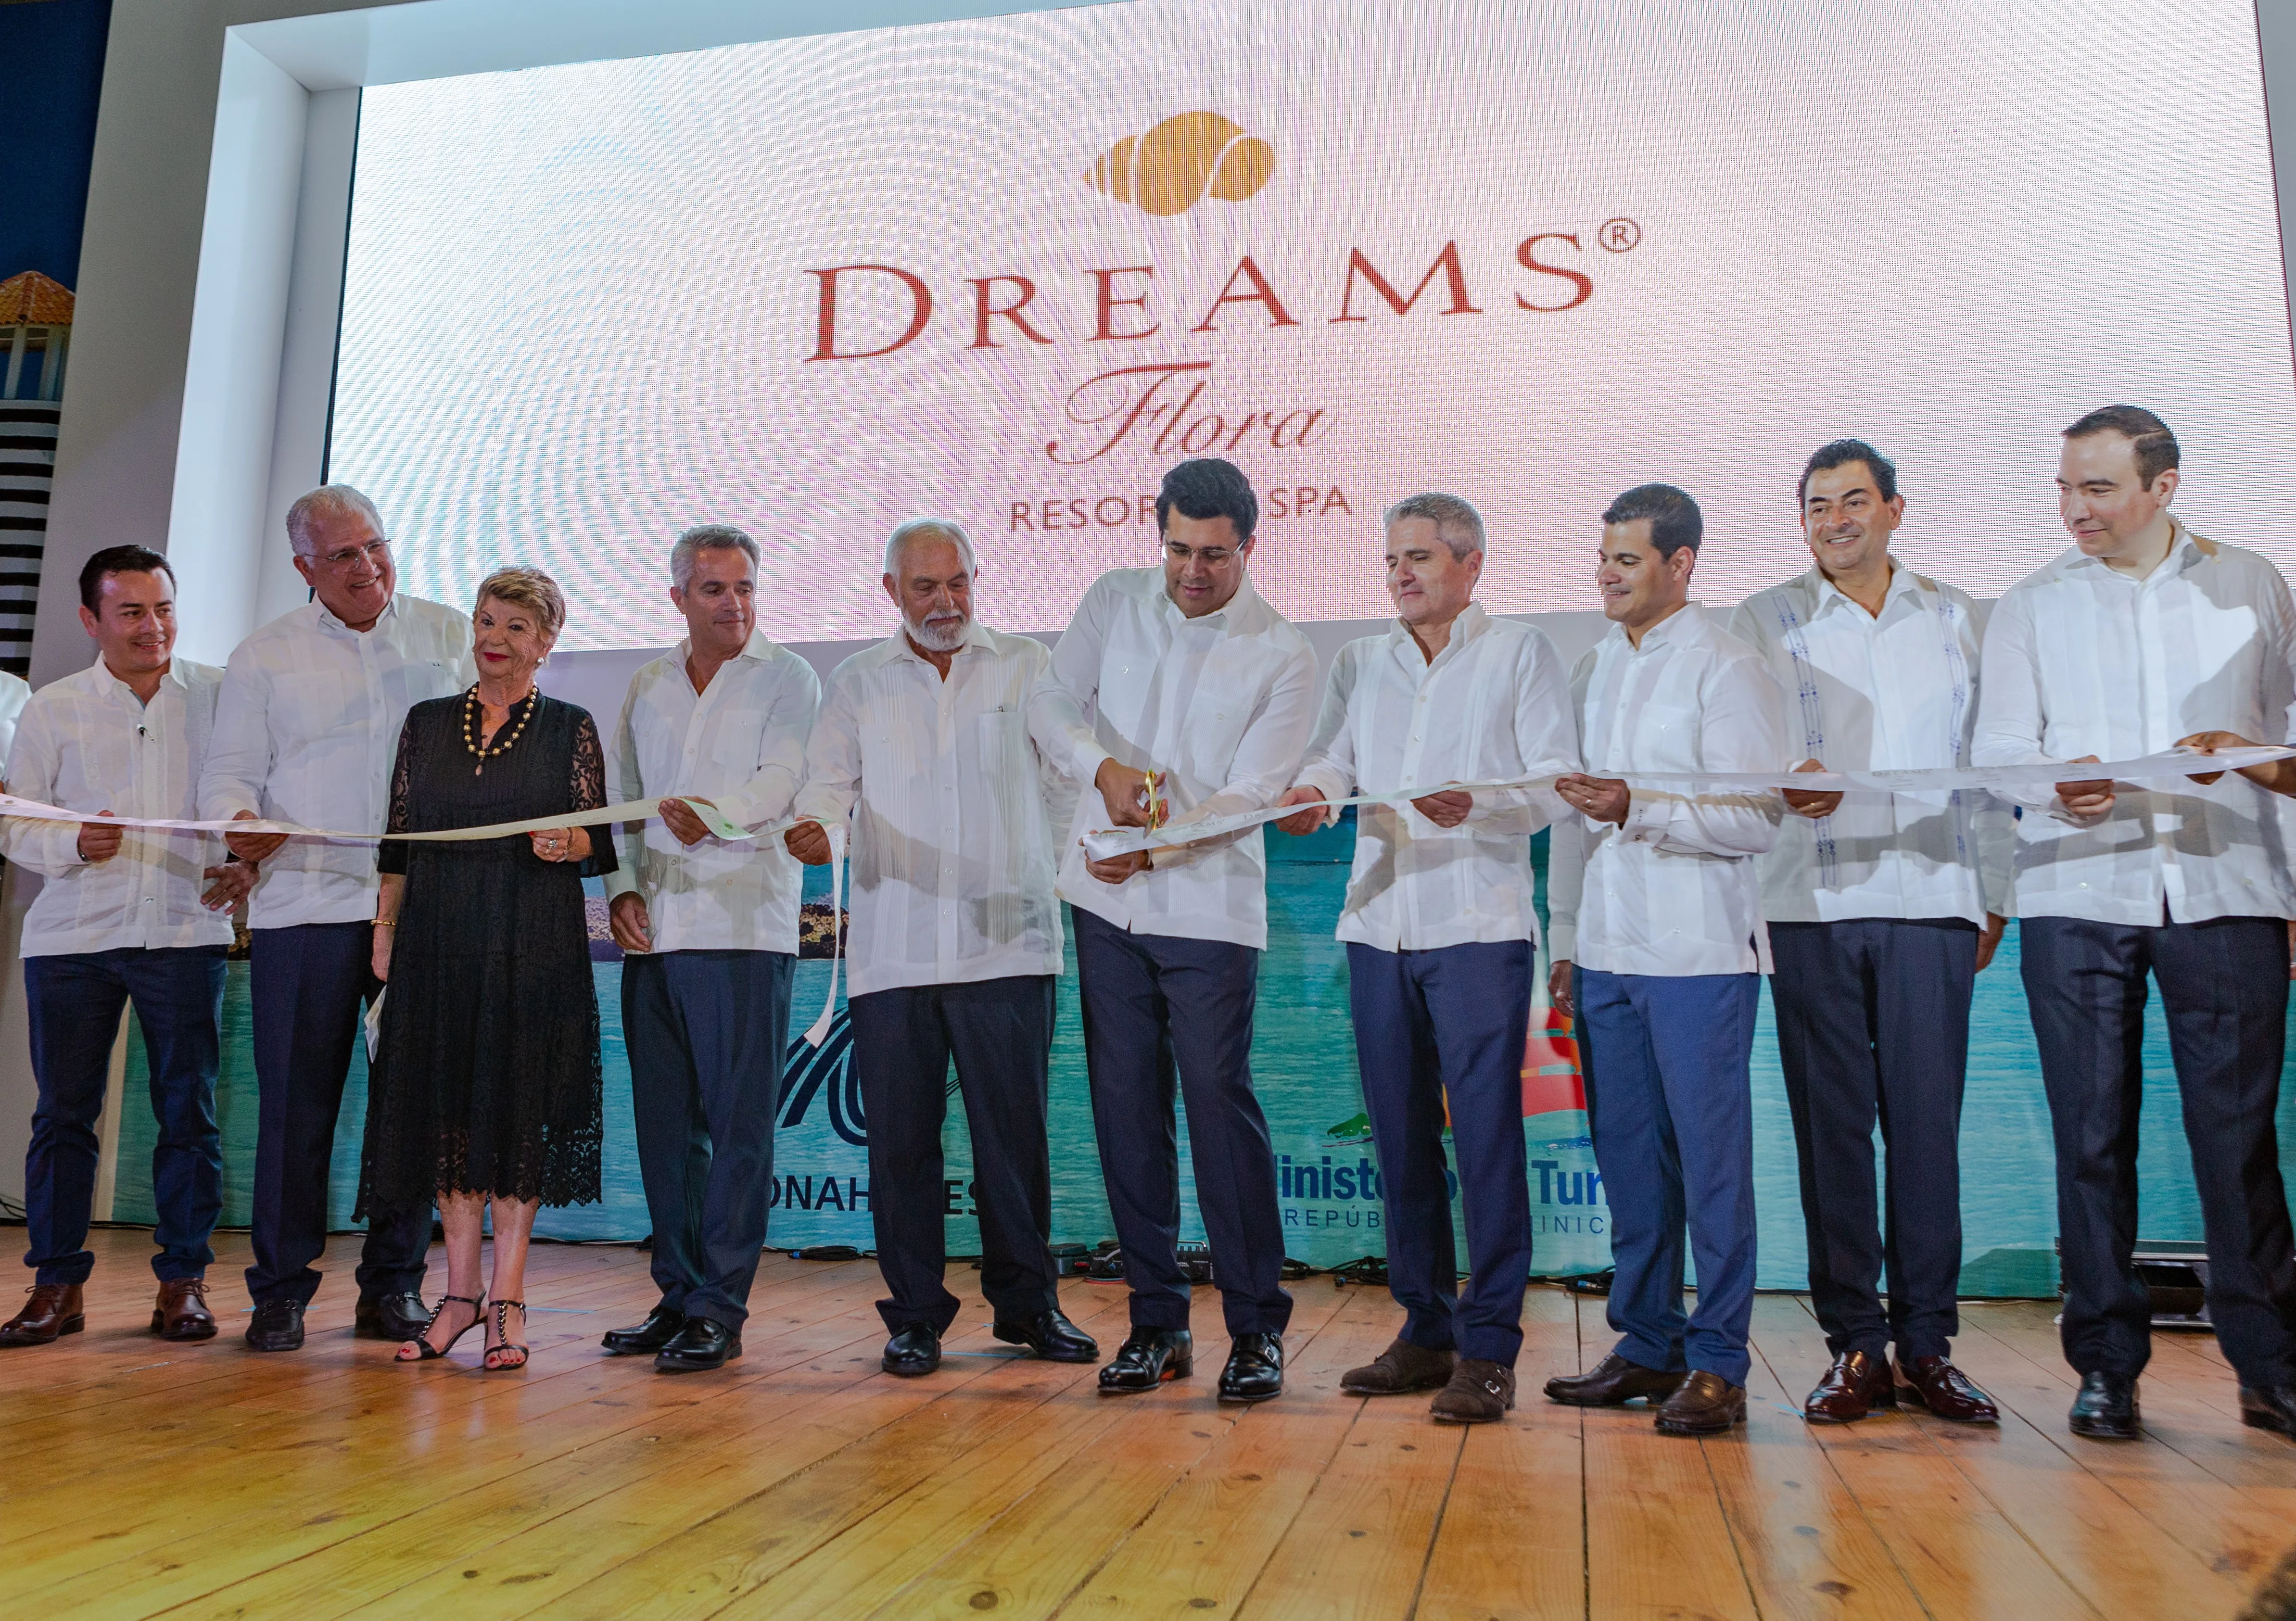 BHD participa en inauguración del Dreams Flora Resort & Spa que financió por US$ 56.8 millones